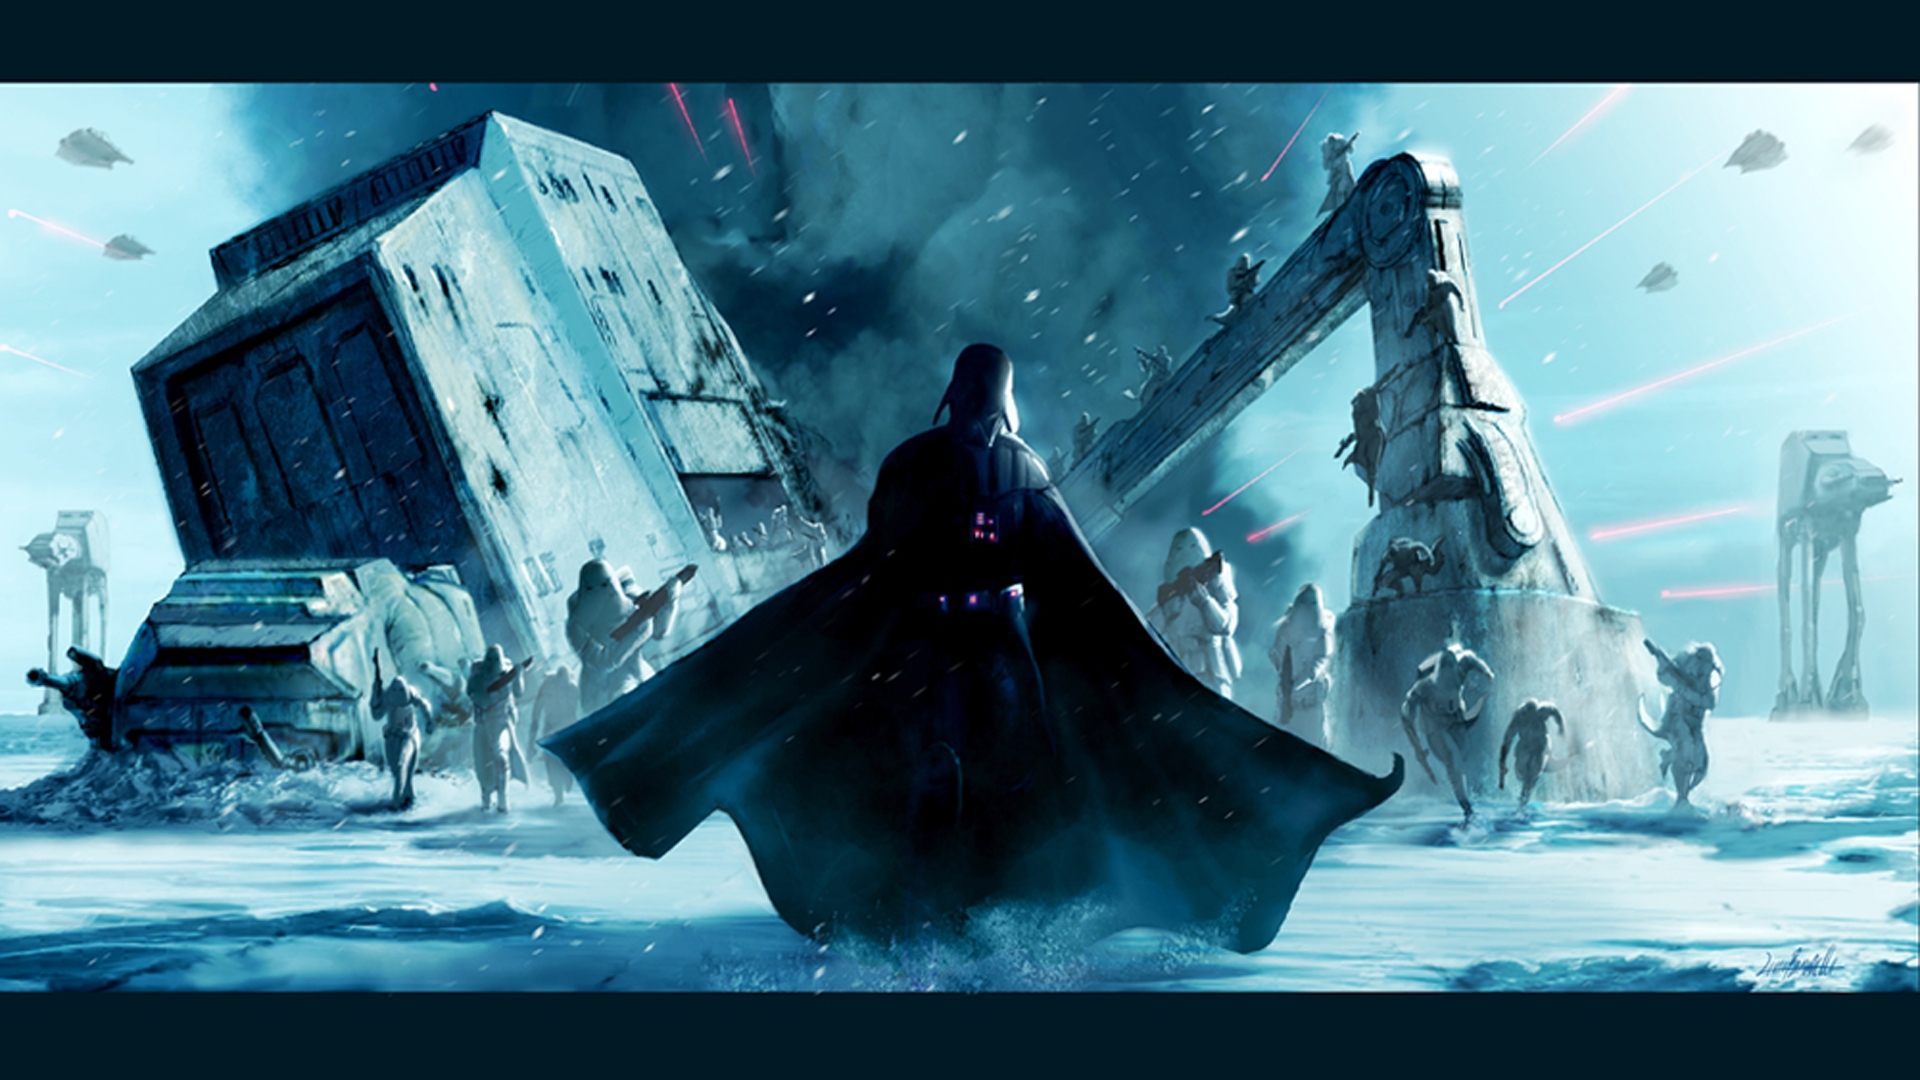 Darth Vader Hoth HD Wallpaper FullHDwpp Full